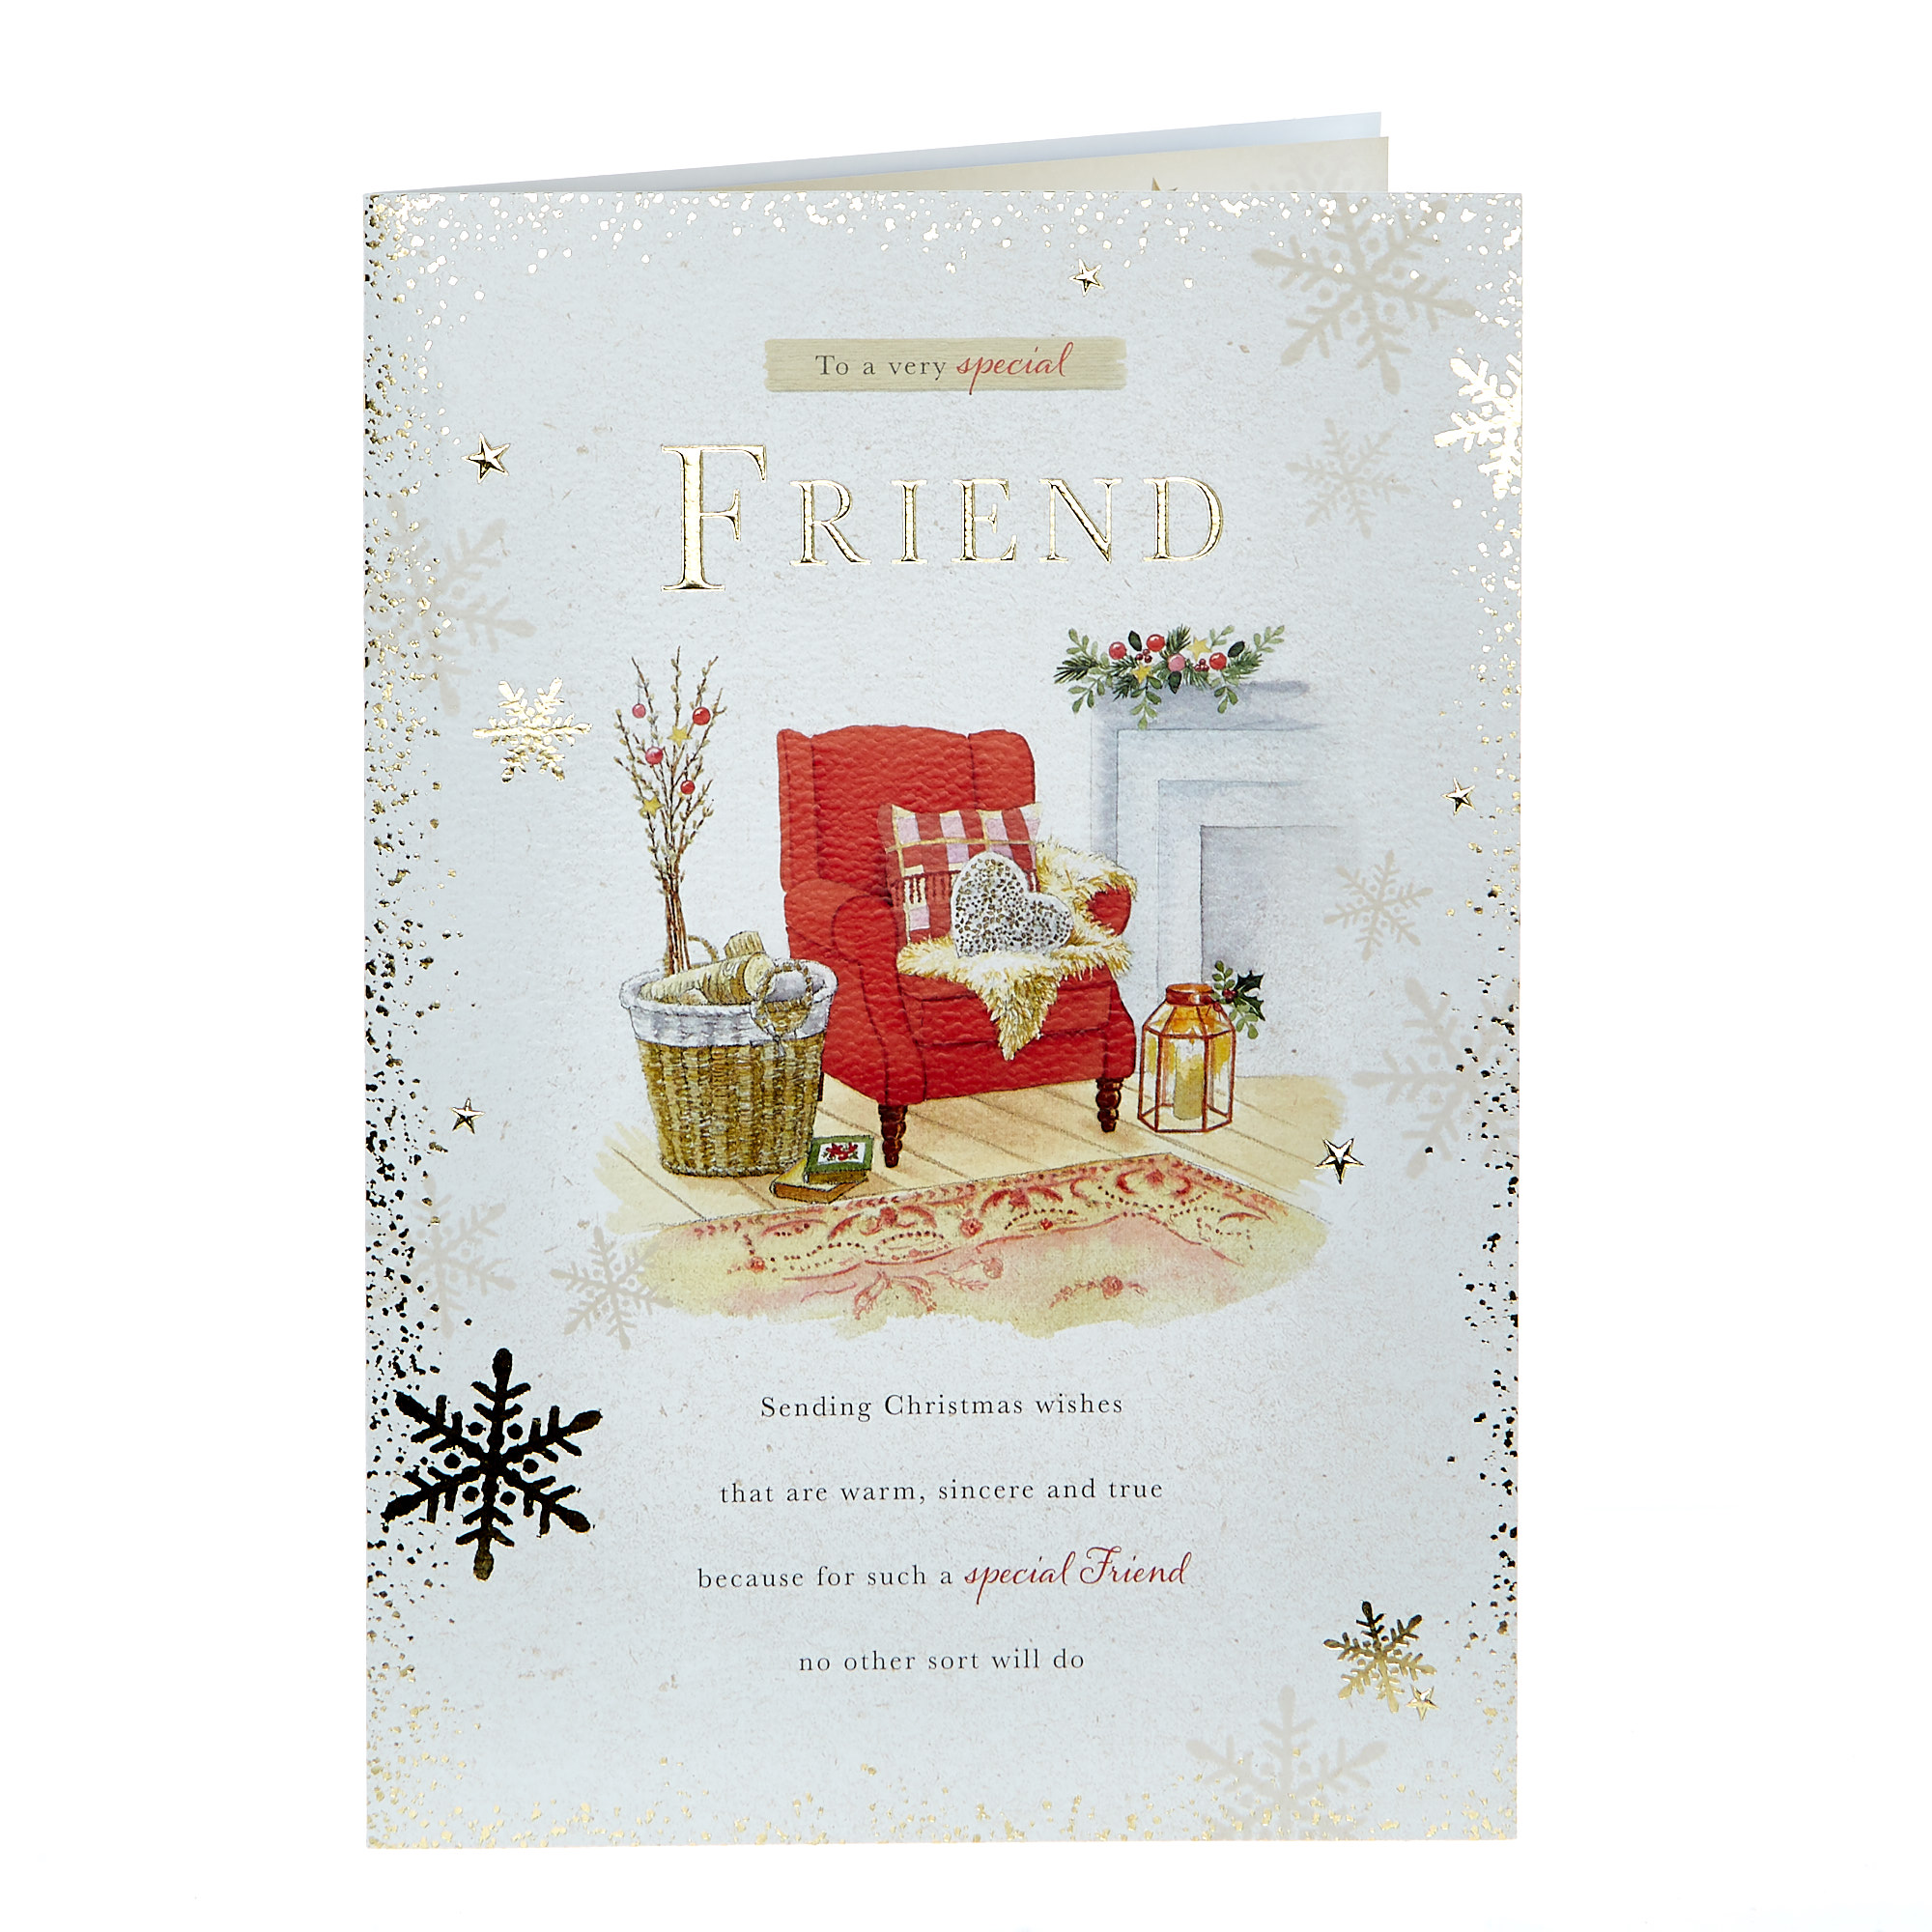 Christmas Card - Friend Fireside Armchair